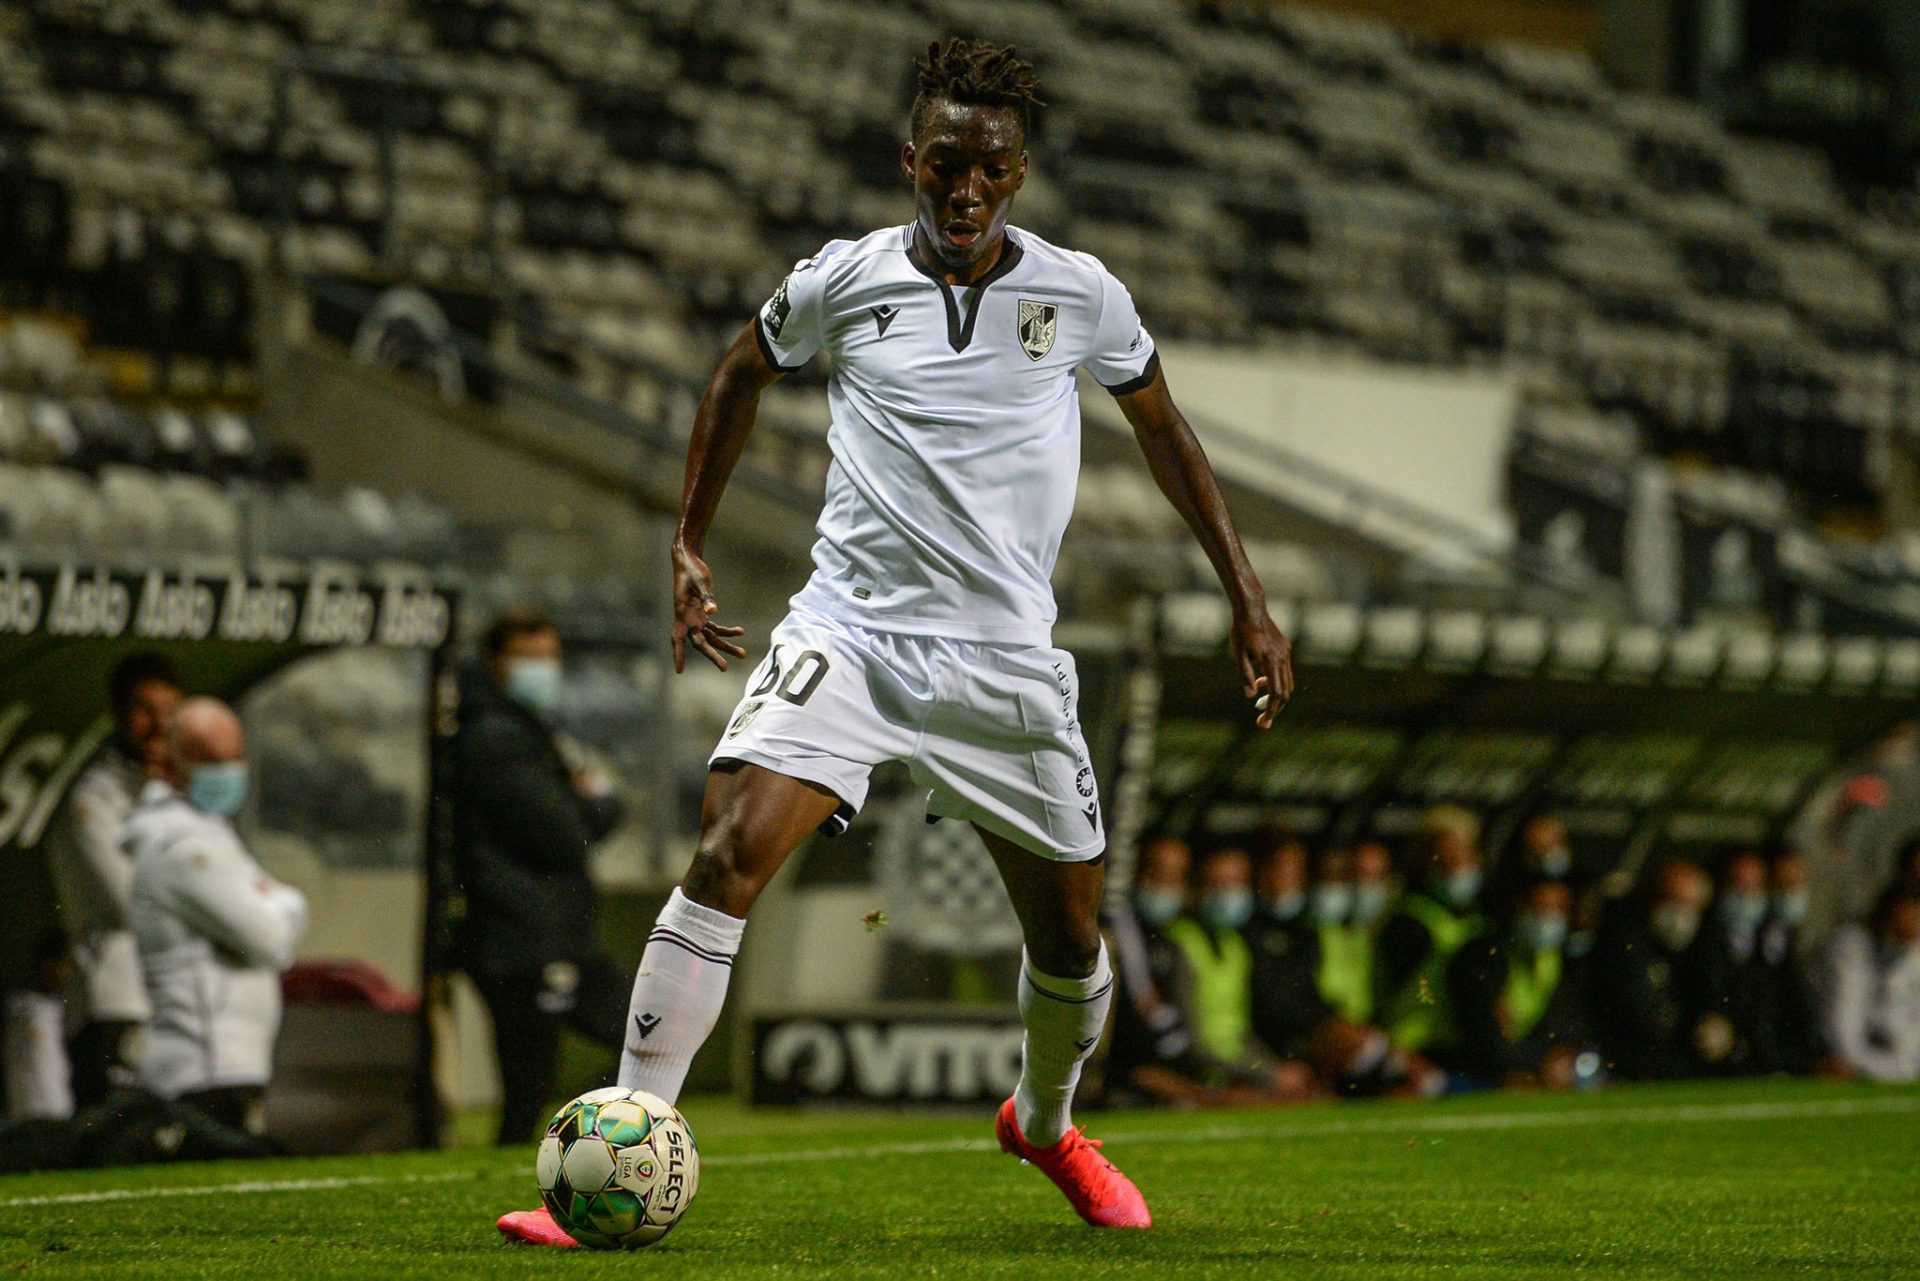 Jogador do Vitória de Guimarães testa positivo ao SARS-CoV-2 pela segunda vez